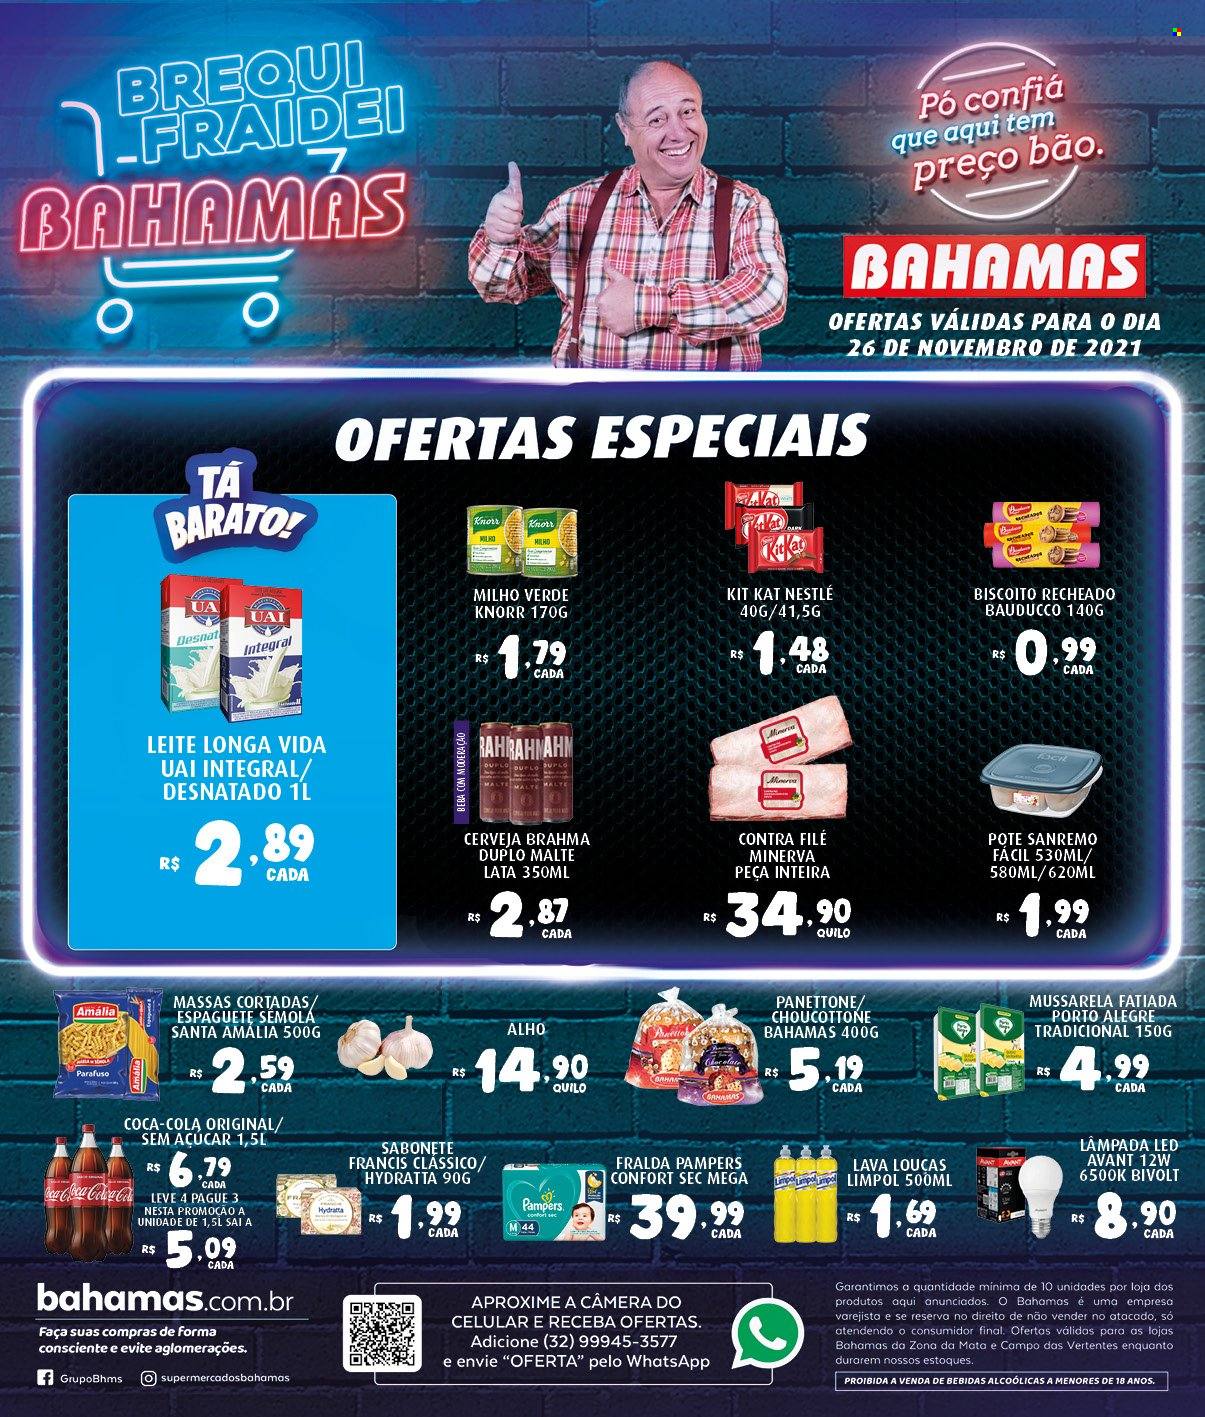 thumbnail - Folheto Bahamas Supermercados - 26/11/2021 - 26/11/2021 - Produtos em promoção - Brahma, cerveja, milho, alho, contra filé, Knorr, mozzarella, leite, Longa vida, biscoito, Nestlé, biscoito recheado, espaguetes, parafuso, Coca Cola, Pampers, fraldas, sabonete, faca, lâmpada. Página 1.